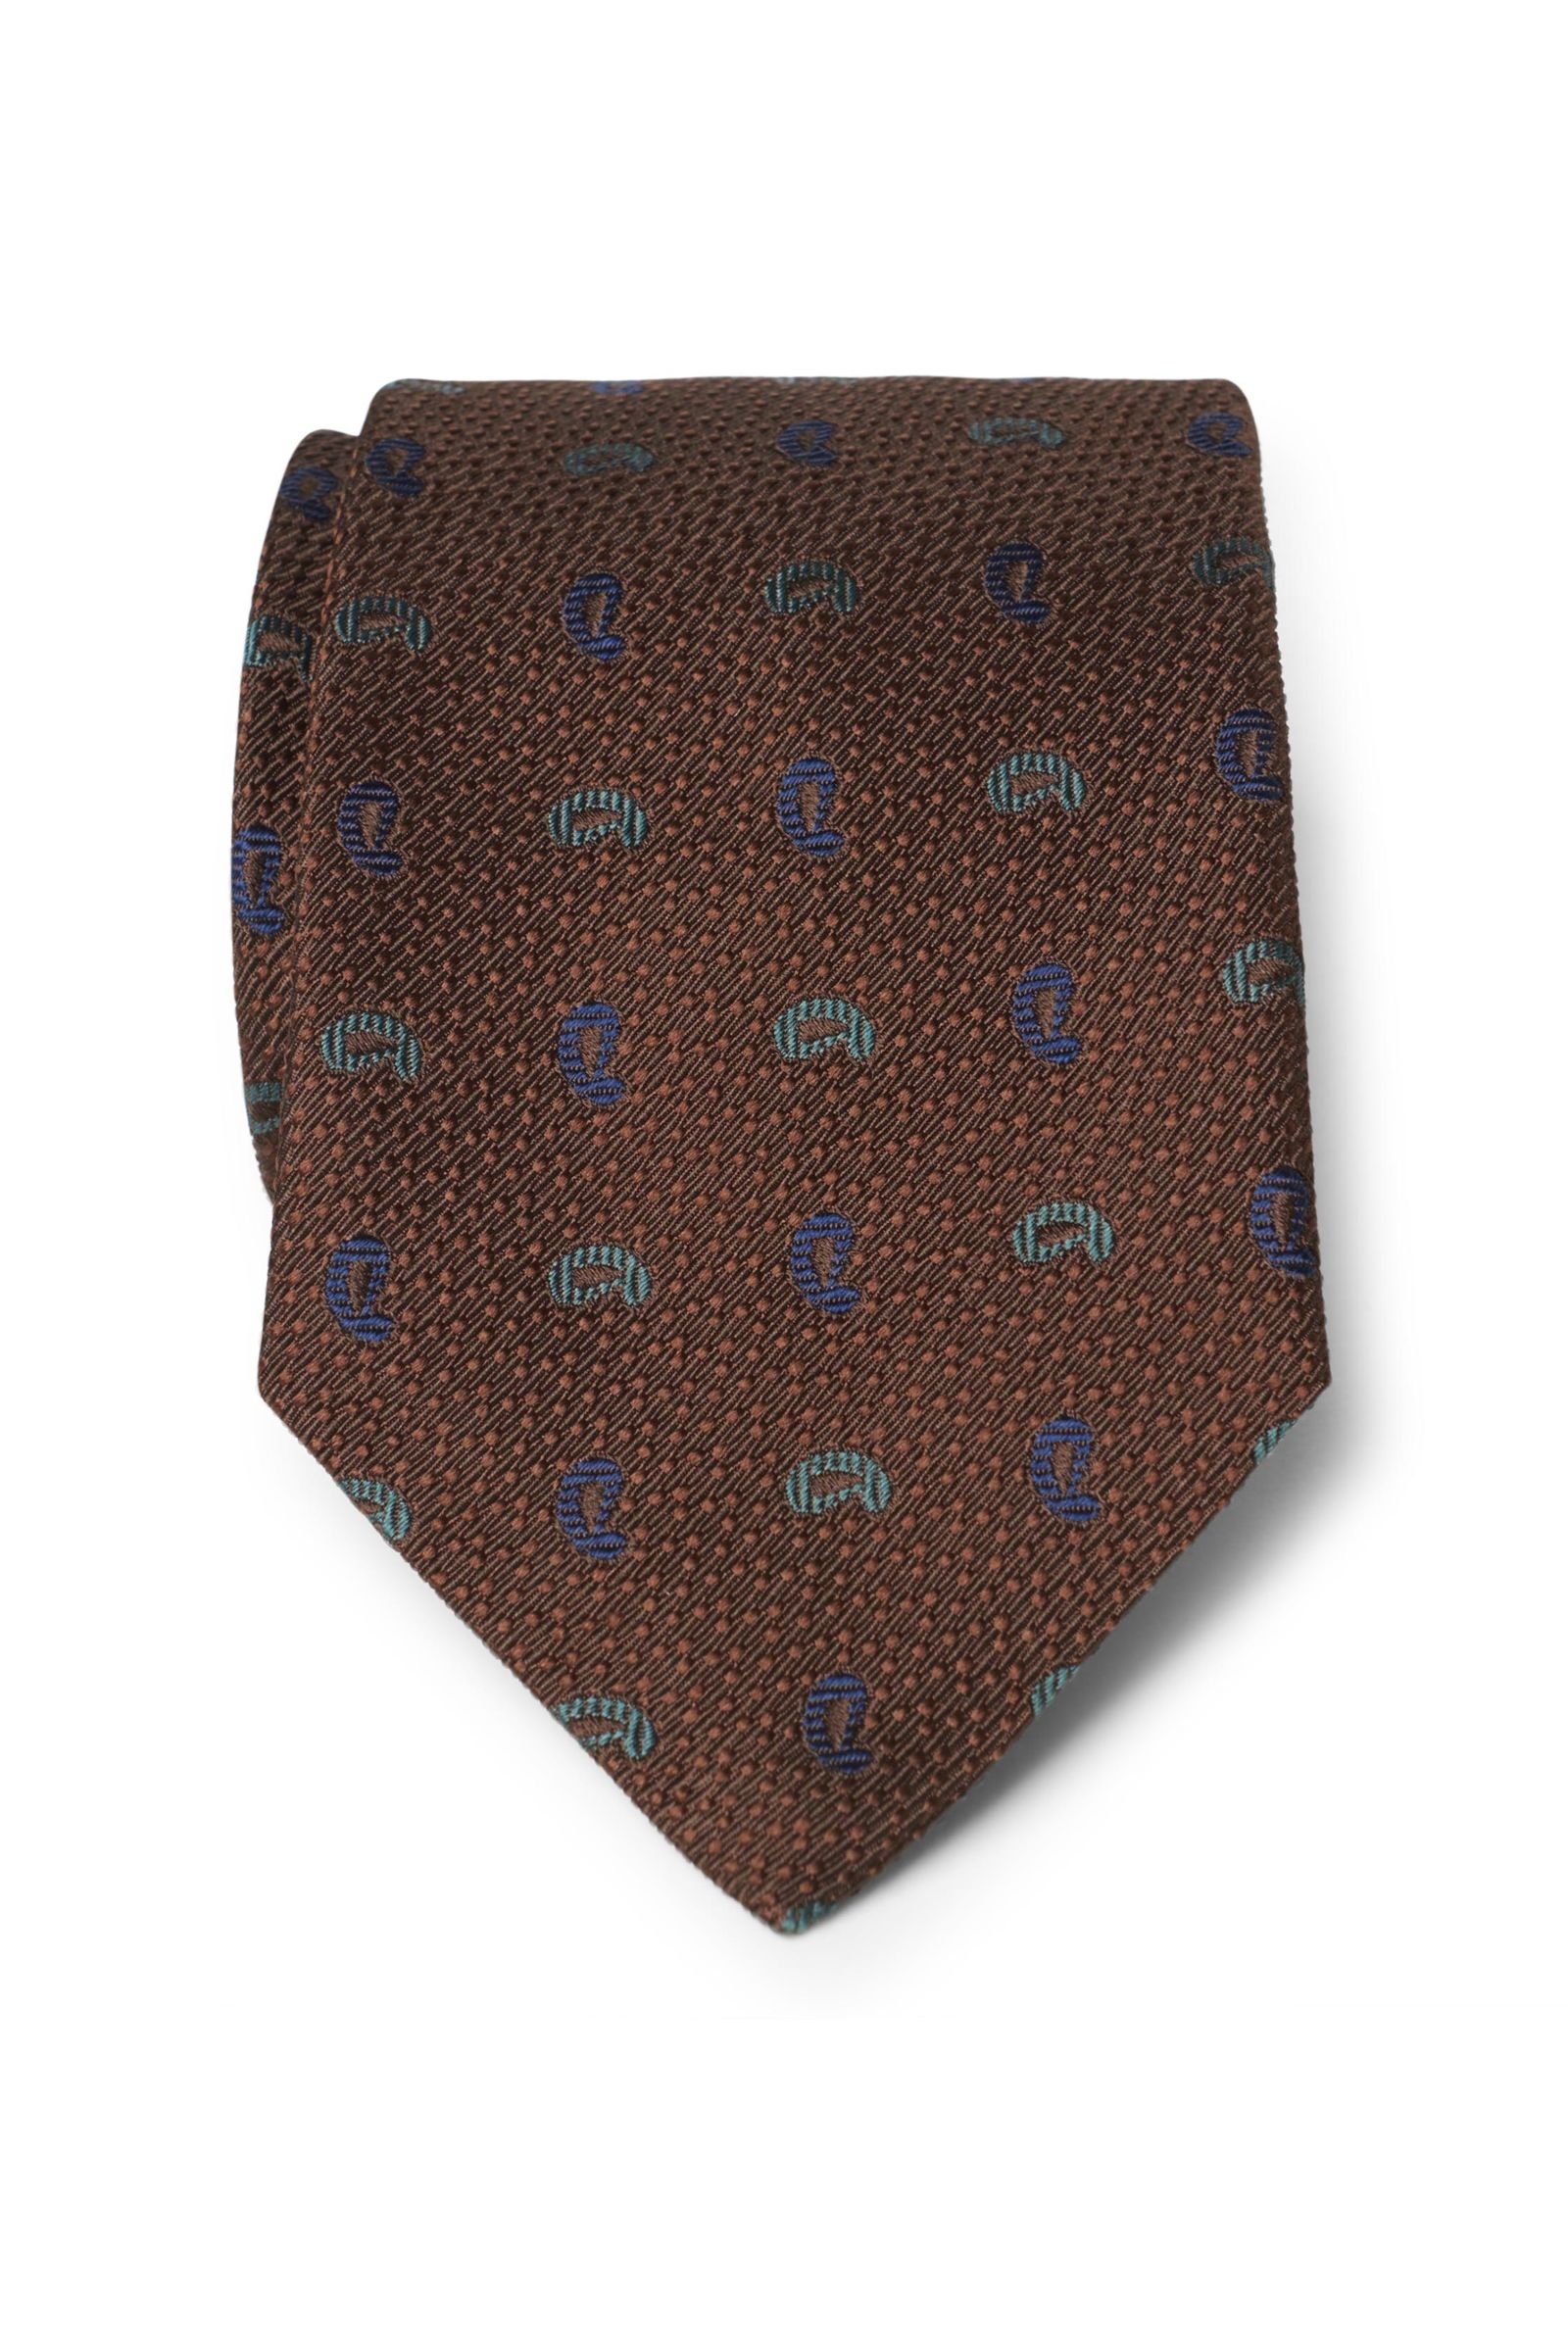 Silk tie dark brown patterned